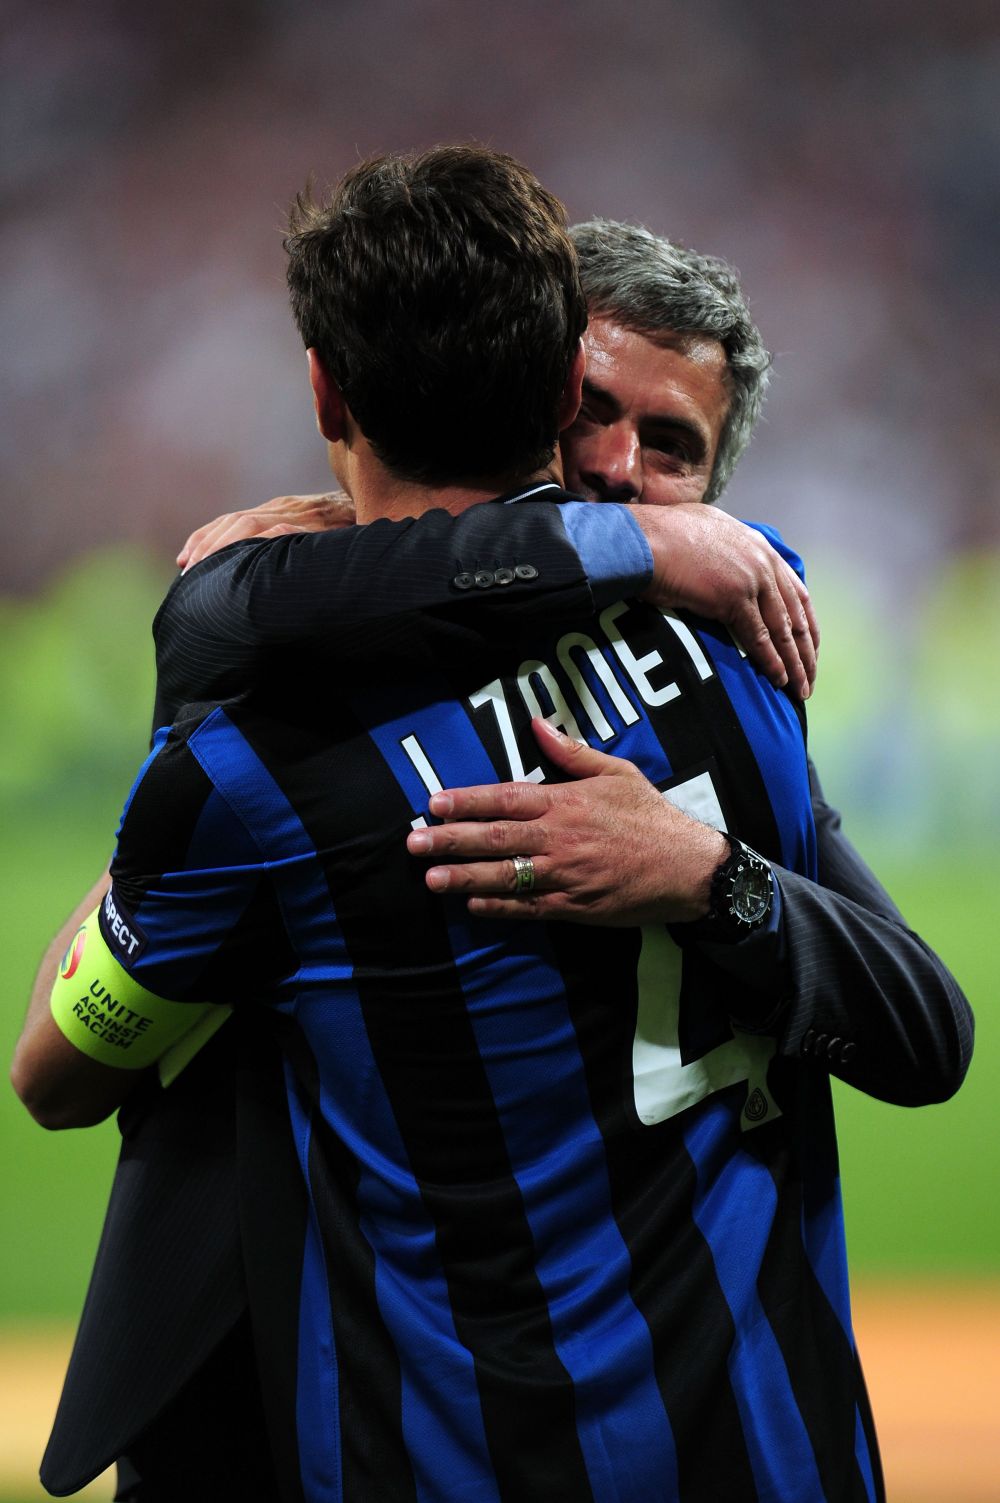 Milioane de oameni sunt in LACRIMI: Javier Zanetti se retrage AZI! "Una storia sola, un amore unico" - Povestea emotionanta:_9